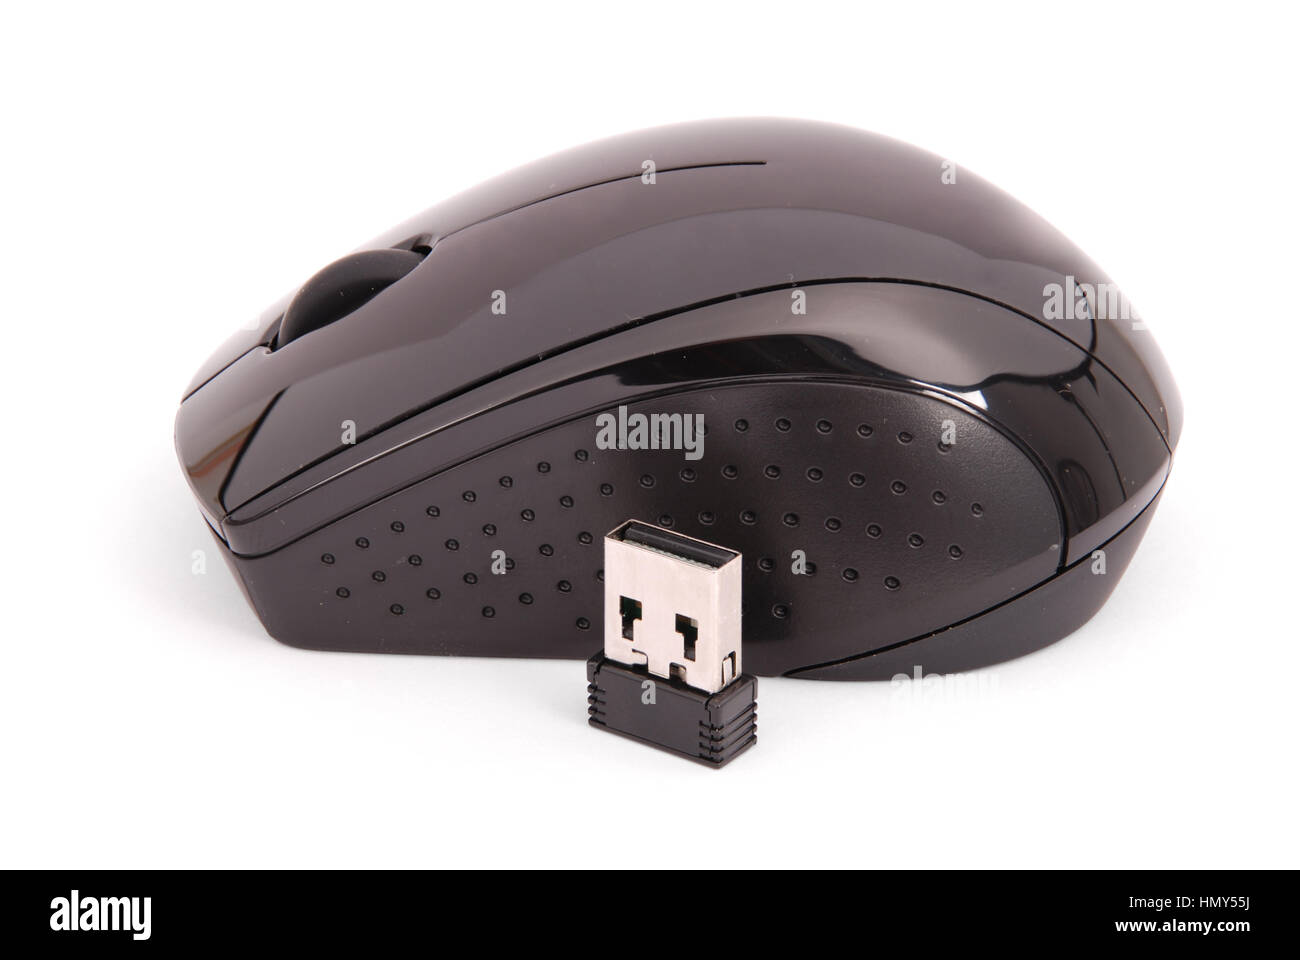 Lecteur de carte USB noir en forme d'une souris, la souris peut être utiliser avec l'ordinateur ainsi, une image isolé sur fond blanc avec l'ombre douce. Clippi Banque D'Images